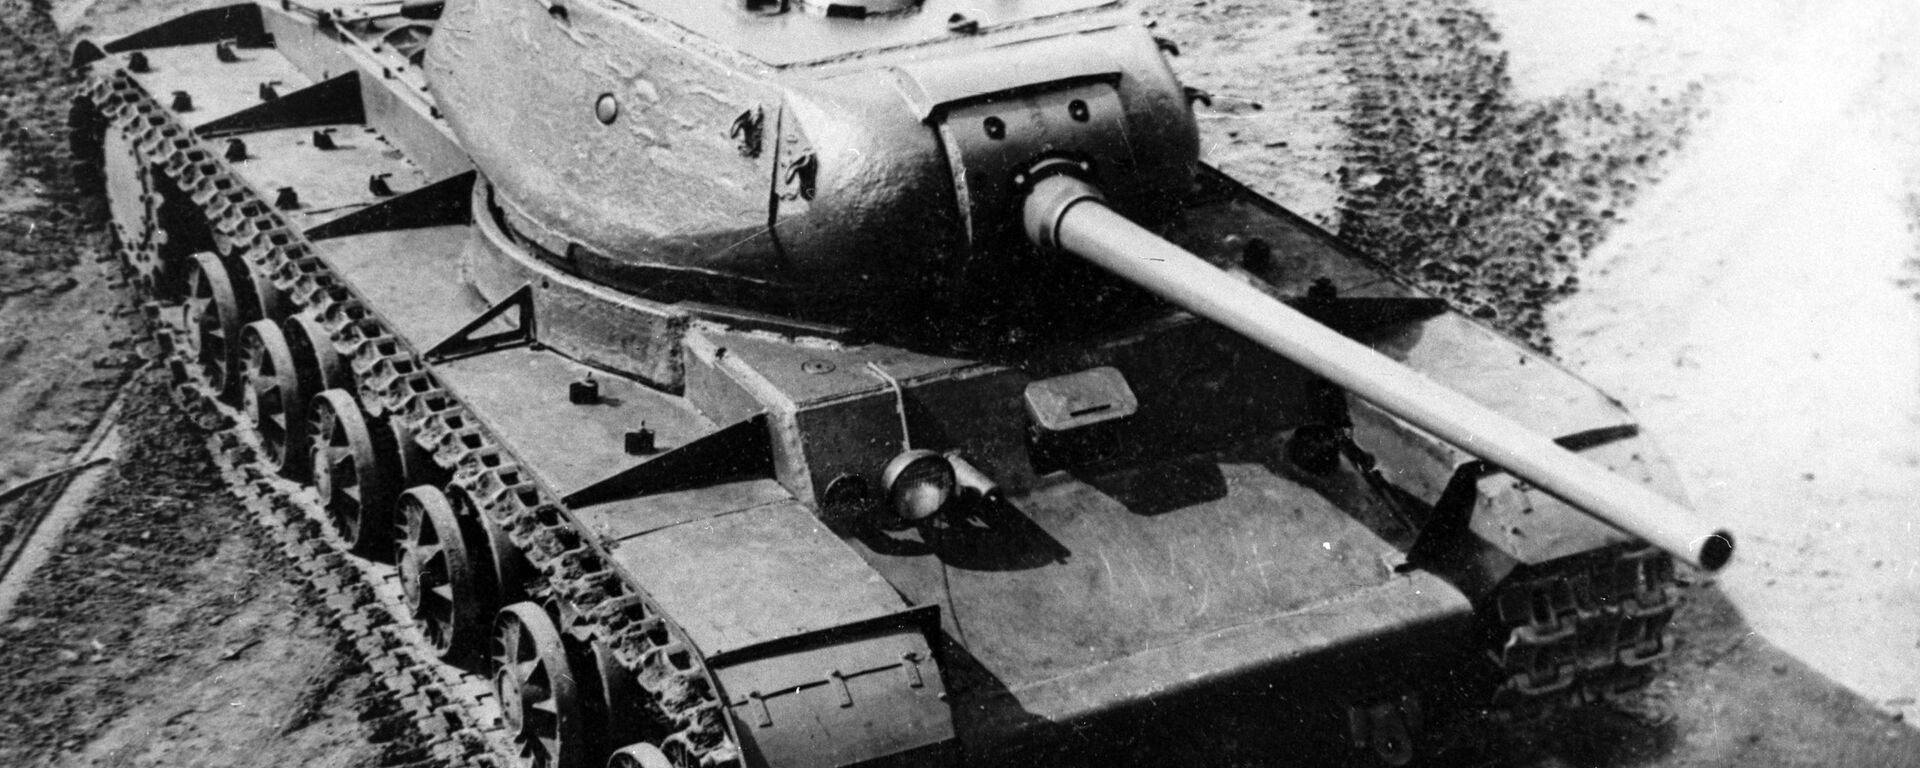 Танк КВ-85 - советский тяжелый танк периода Великой Отечественной войны - Sputnik Lietuva, 1920, 06.05.2020